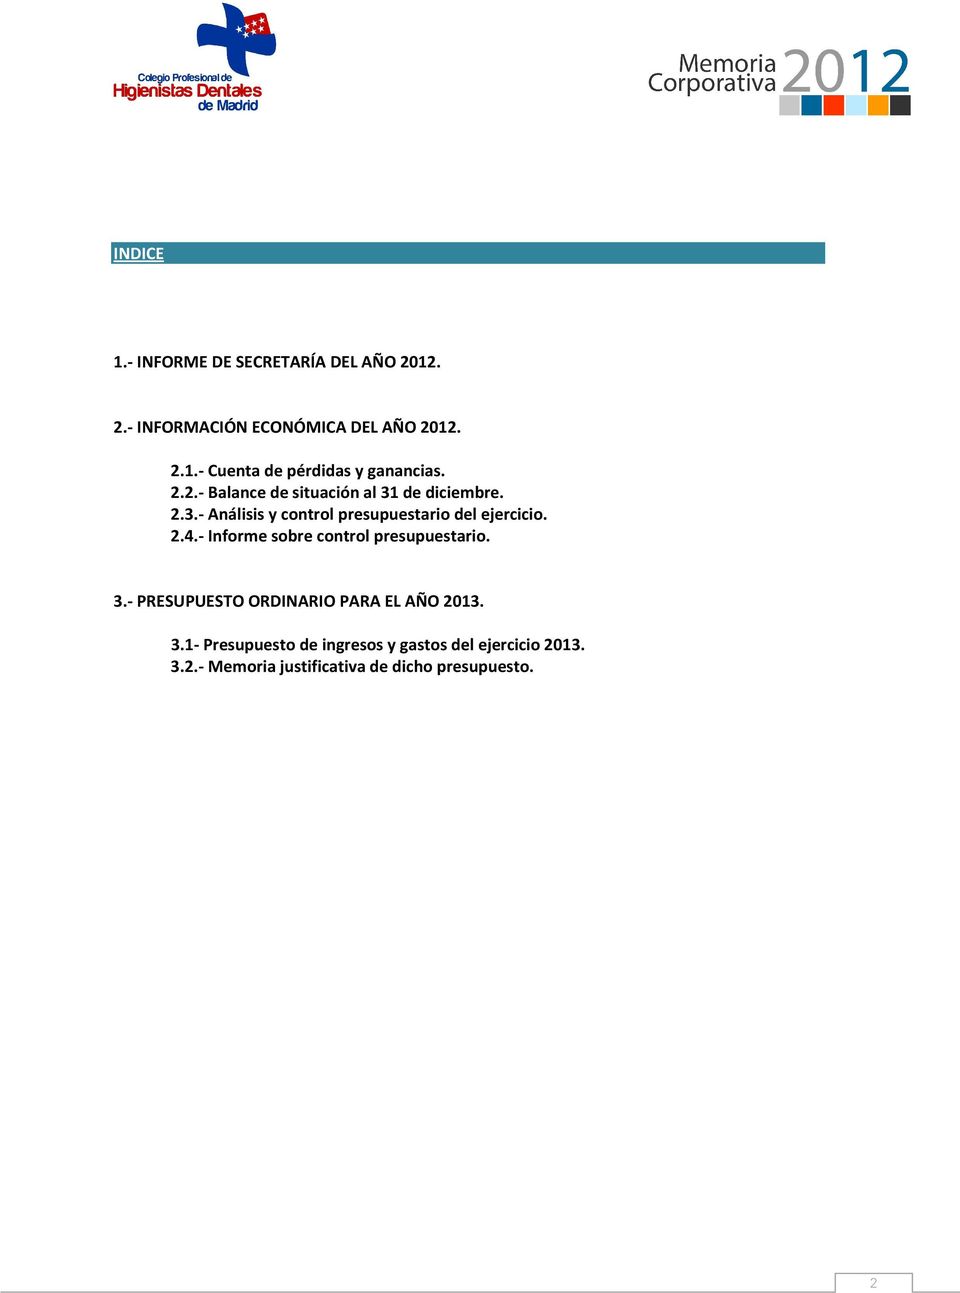 - Informe sobre control presupuestario. 3.- PRESUPUESTO ORDINARIO PARA EL AÑO 2013. 3.1- Presupuesto de ingresos y gastos del ejercicio 2013.